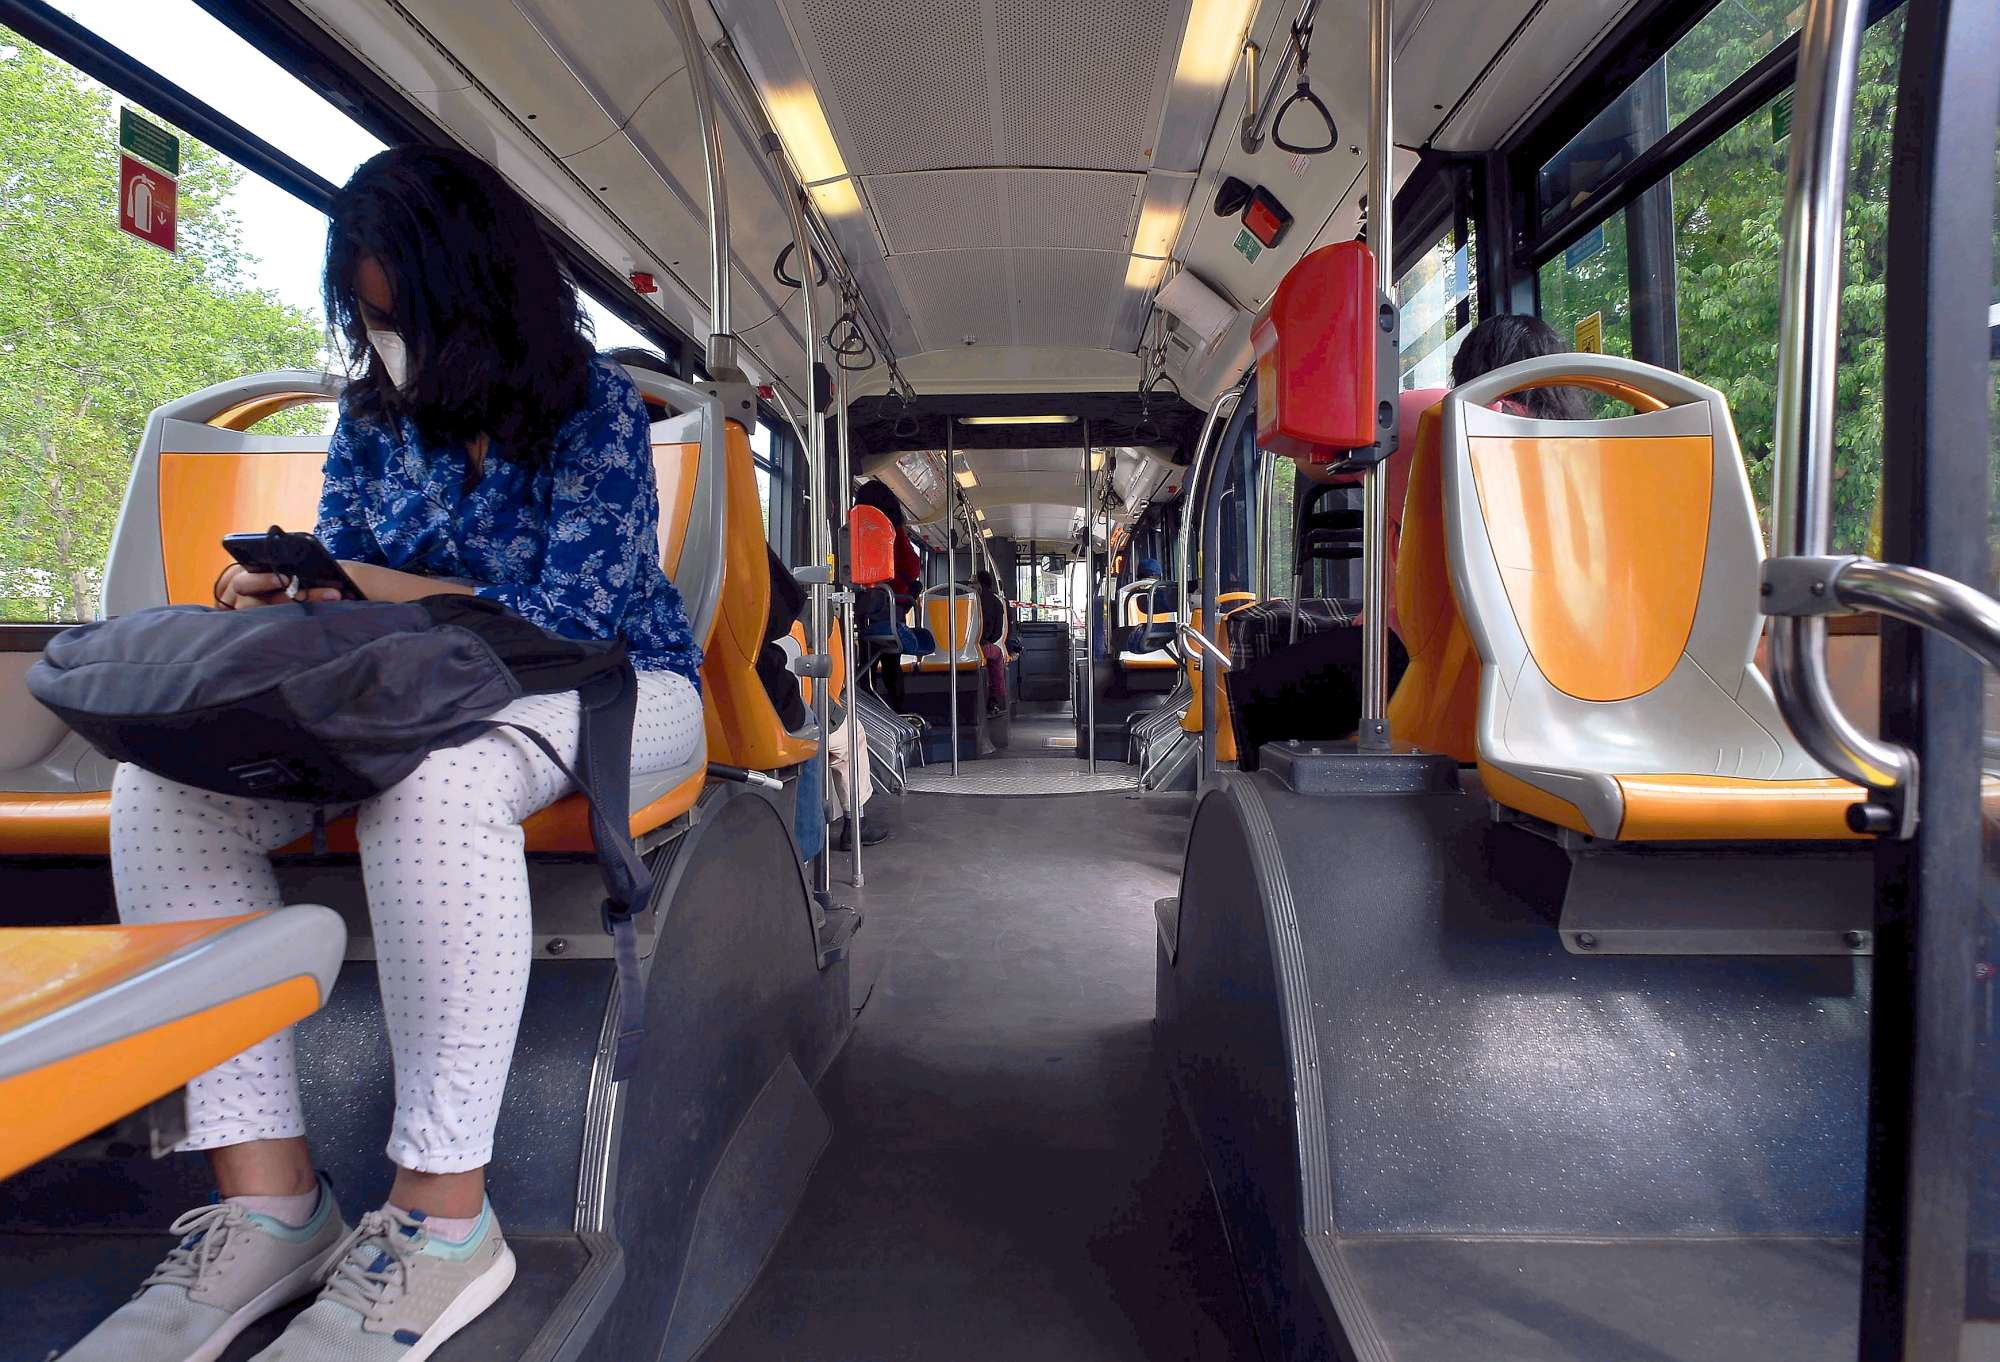 riapertura-scuole-distanziamento-metro-bus